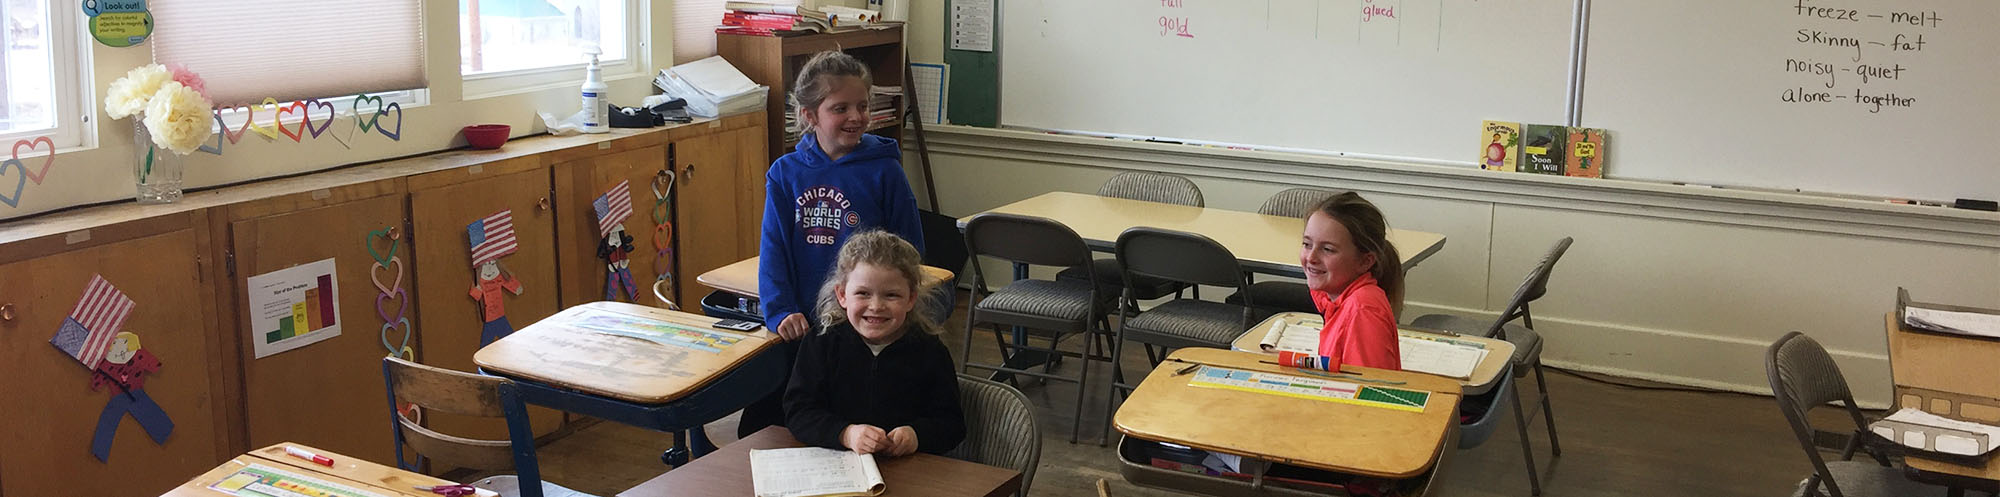 Three happy elementary school girls sitting in a classroom